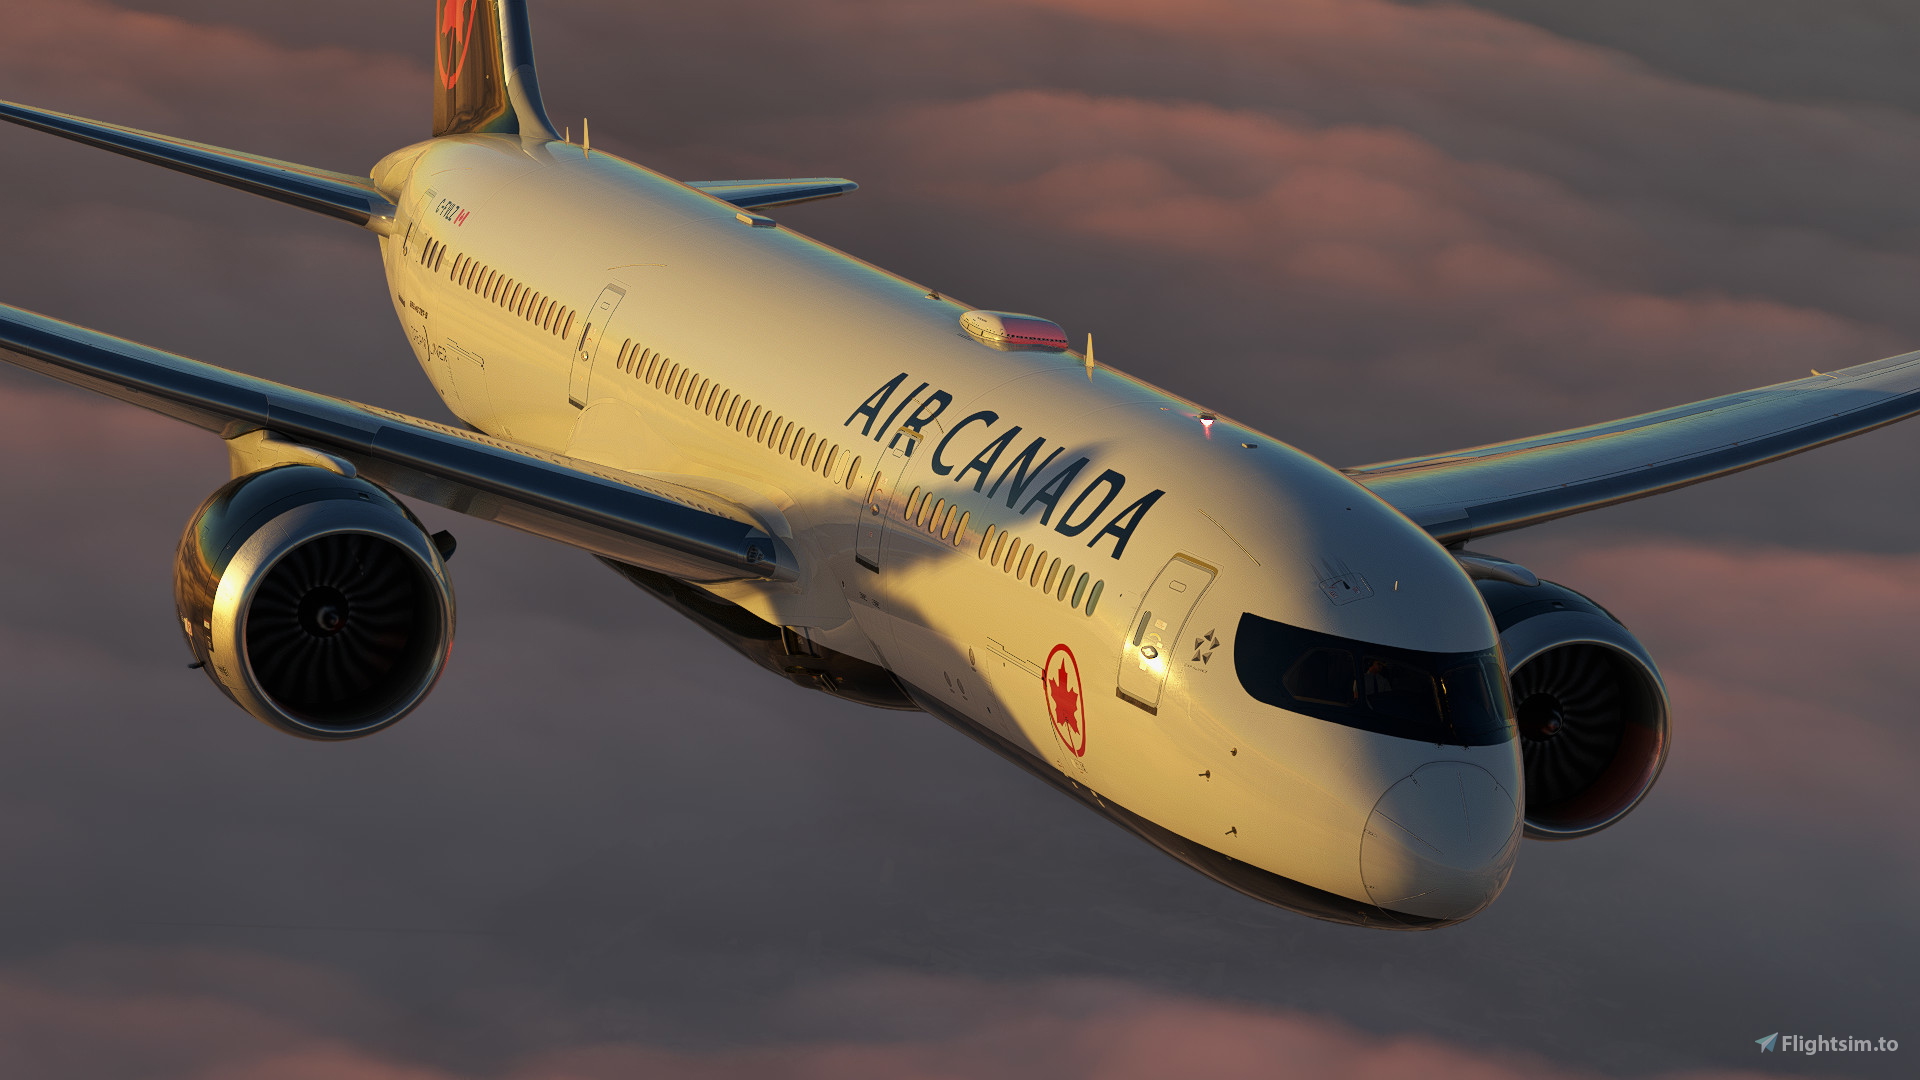 Air Canada C-FVLZ | Boeing 787-9 | (8K + 4K) for Microsoft Flight 